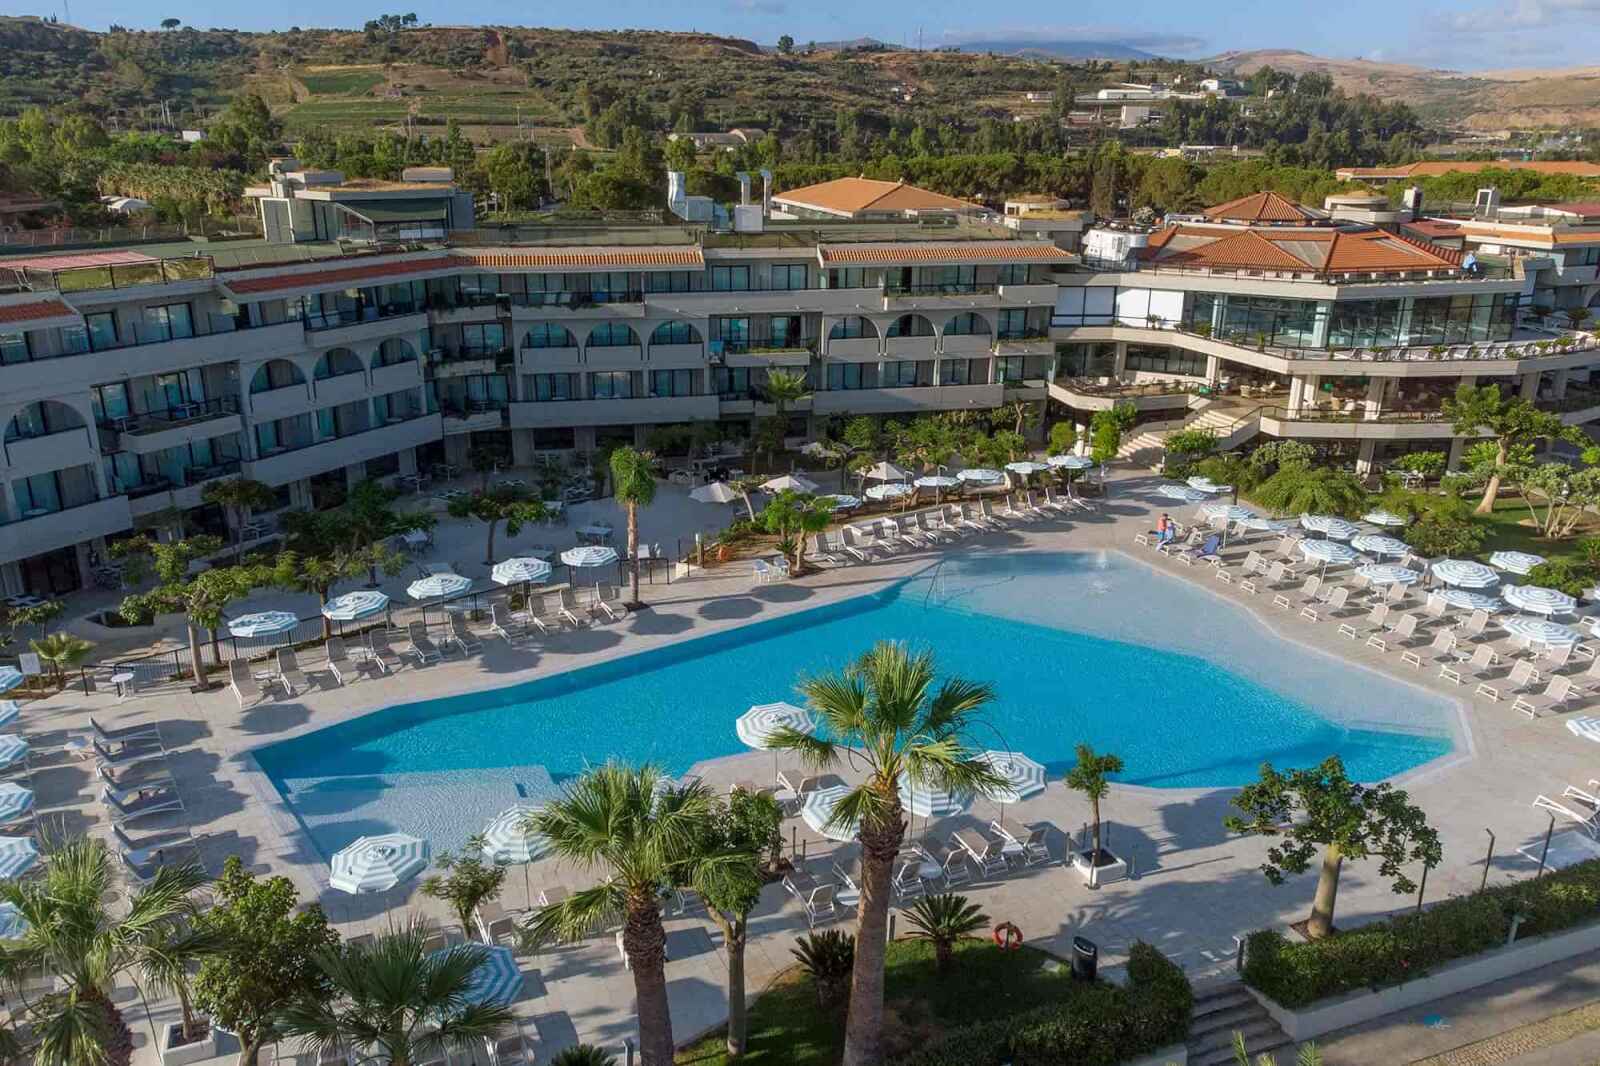 Italie - Sicile - Hotel Grand Palladium Sicilia Resort & Spa 5*